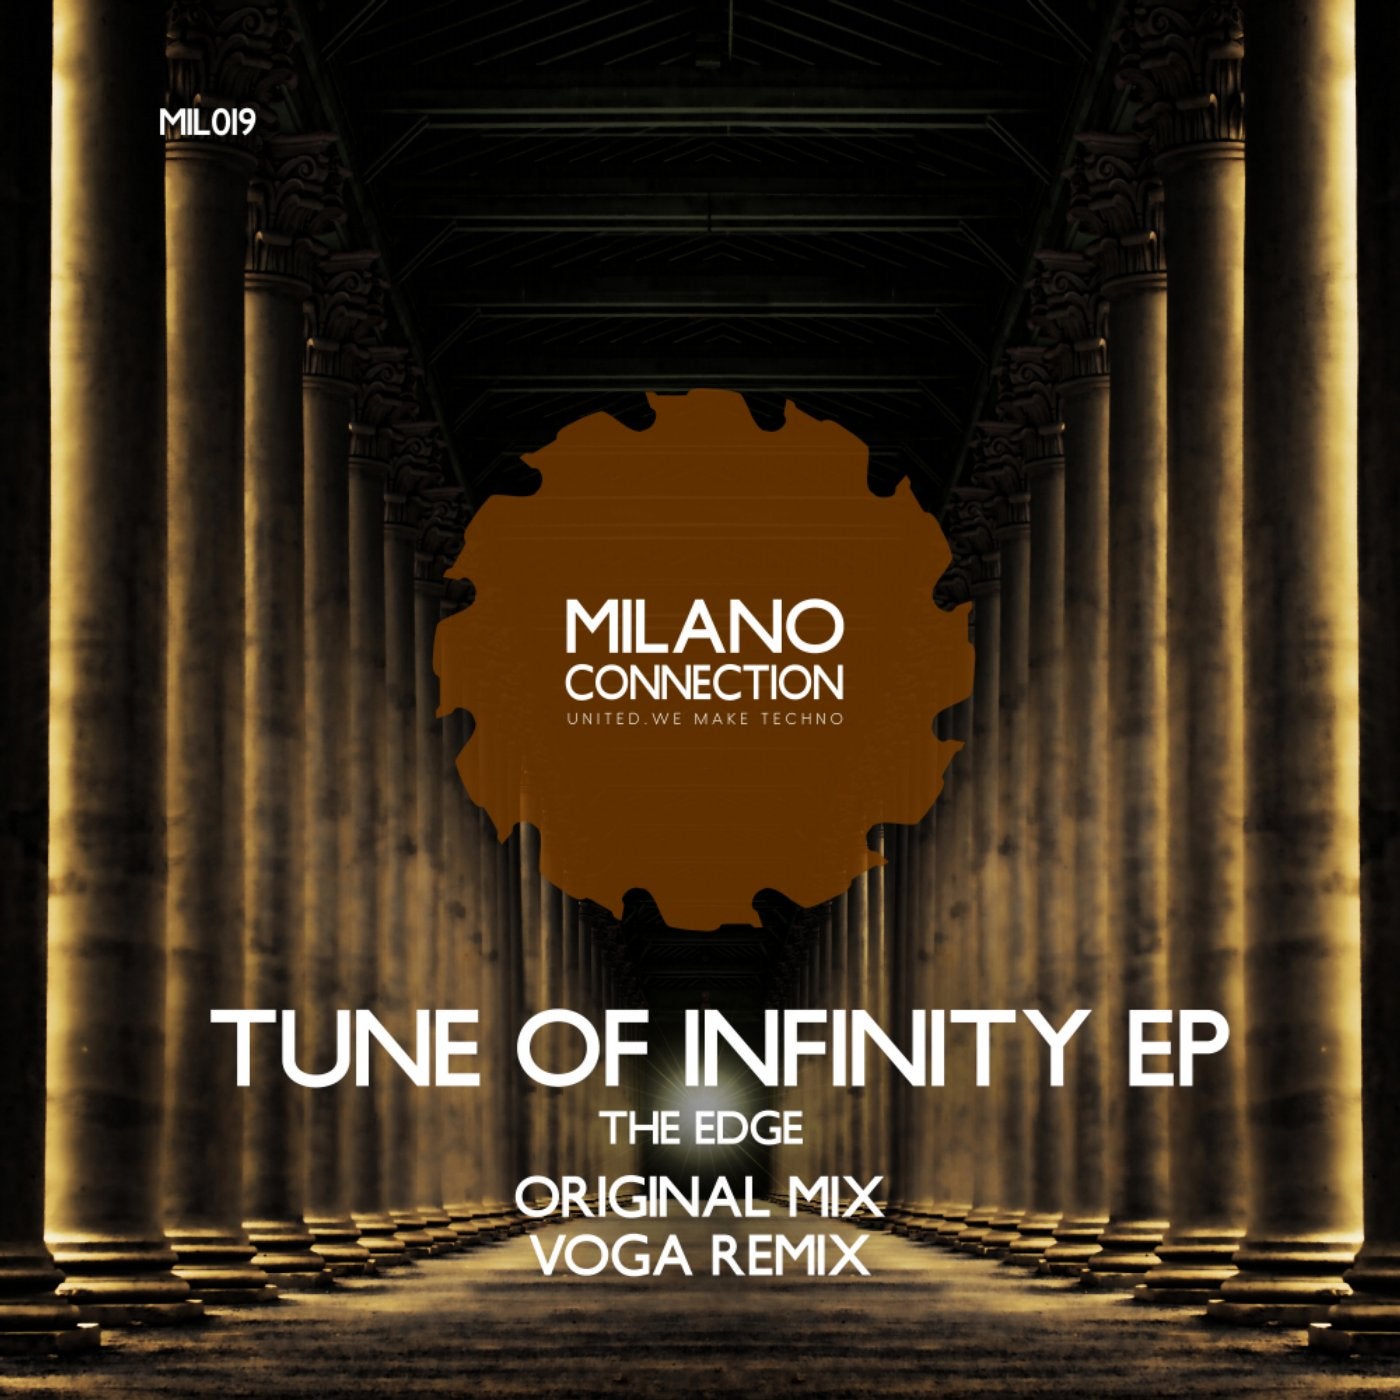 Tune of Infinity EP